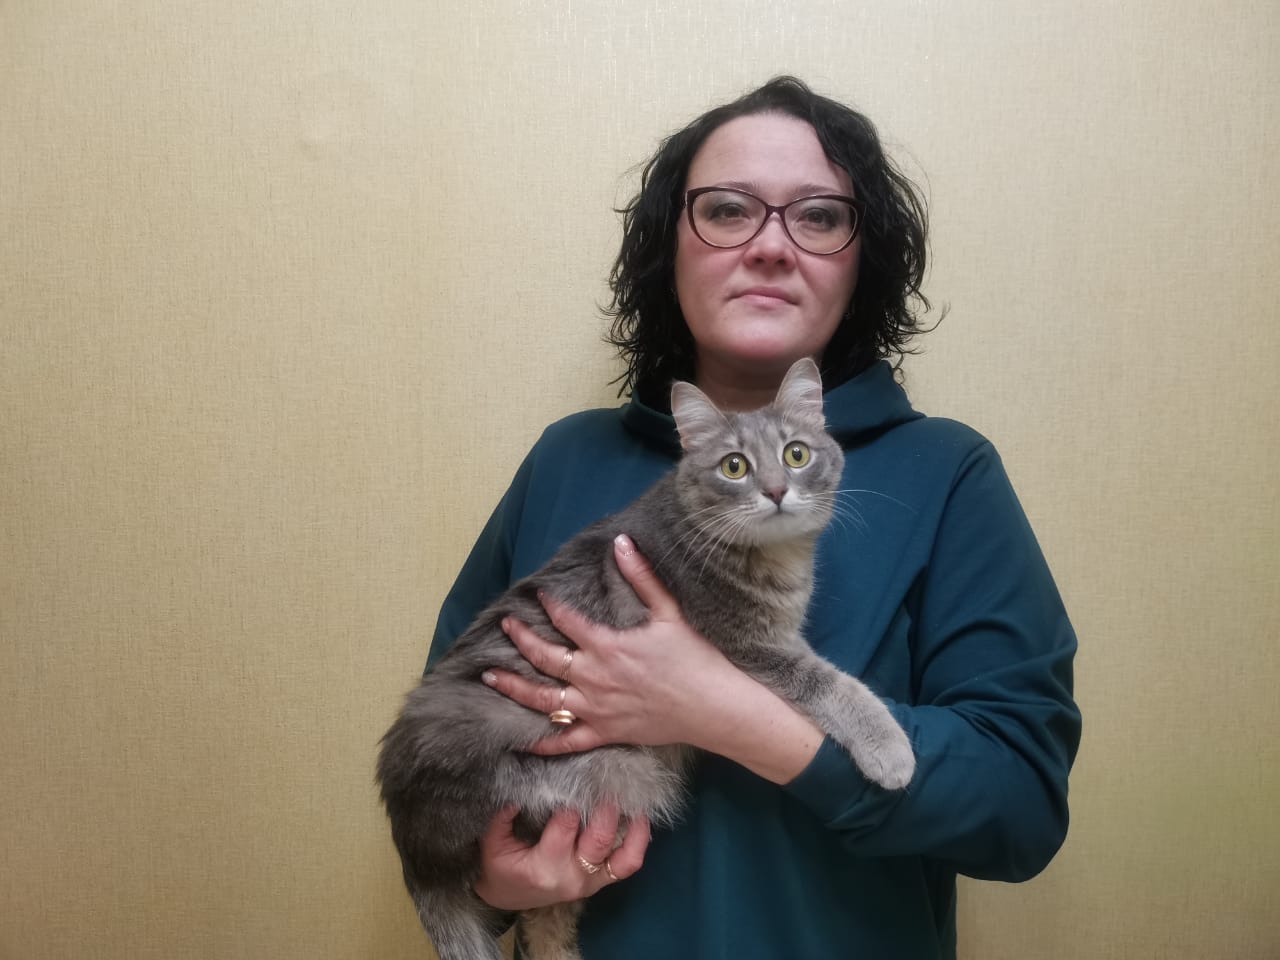 Больше года в семье зооволонтера Екатерины Вотенцовой живет кошка Мегумин, которую еще 2-месячным котенком какие-то бездушные люди выбросили на ходу из окна автомобиля